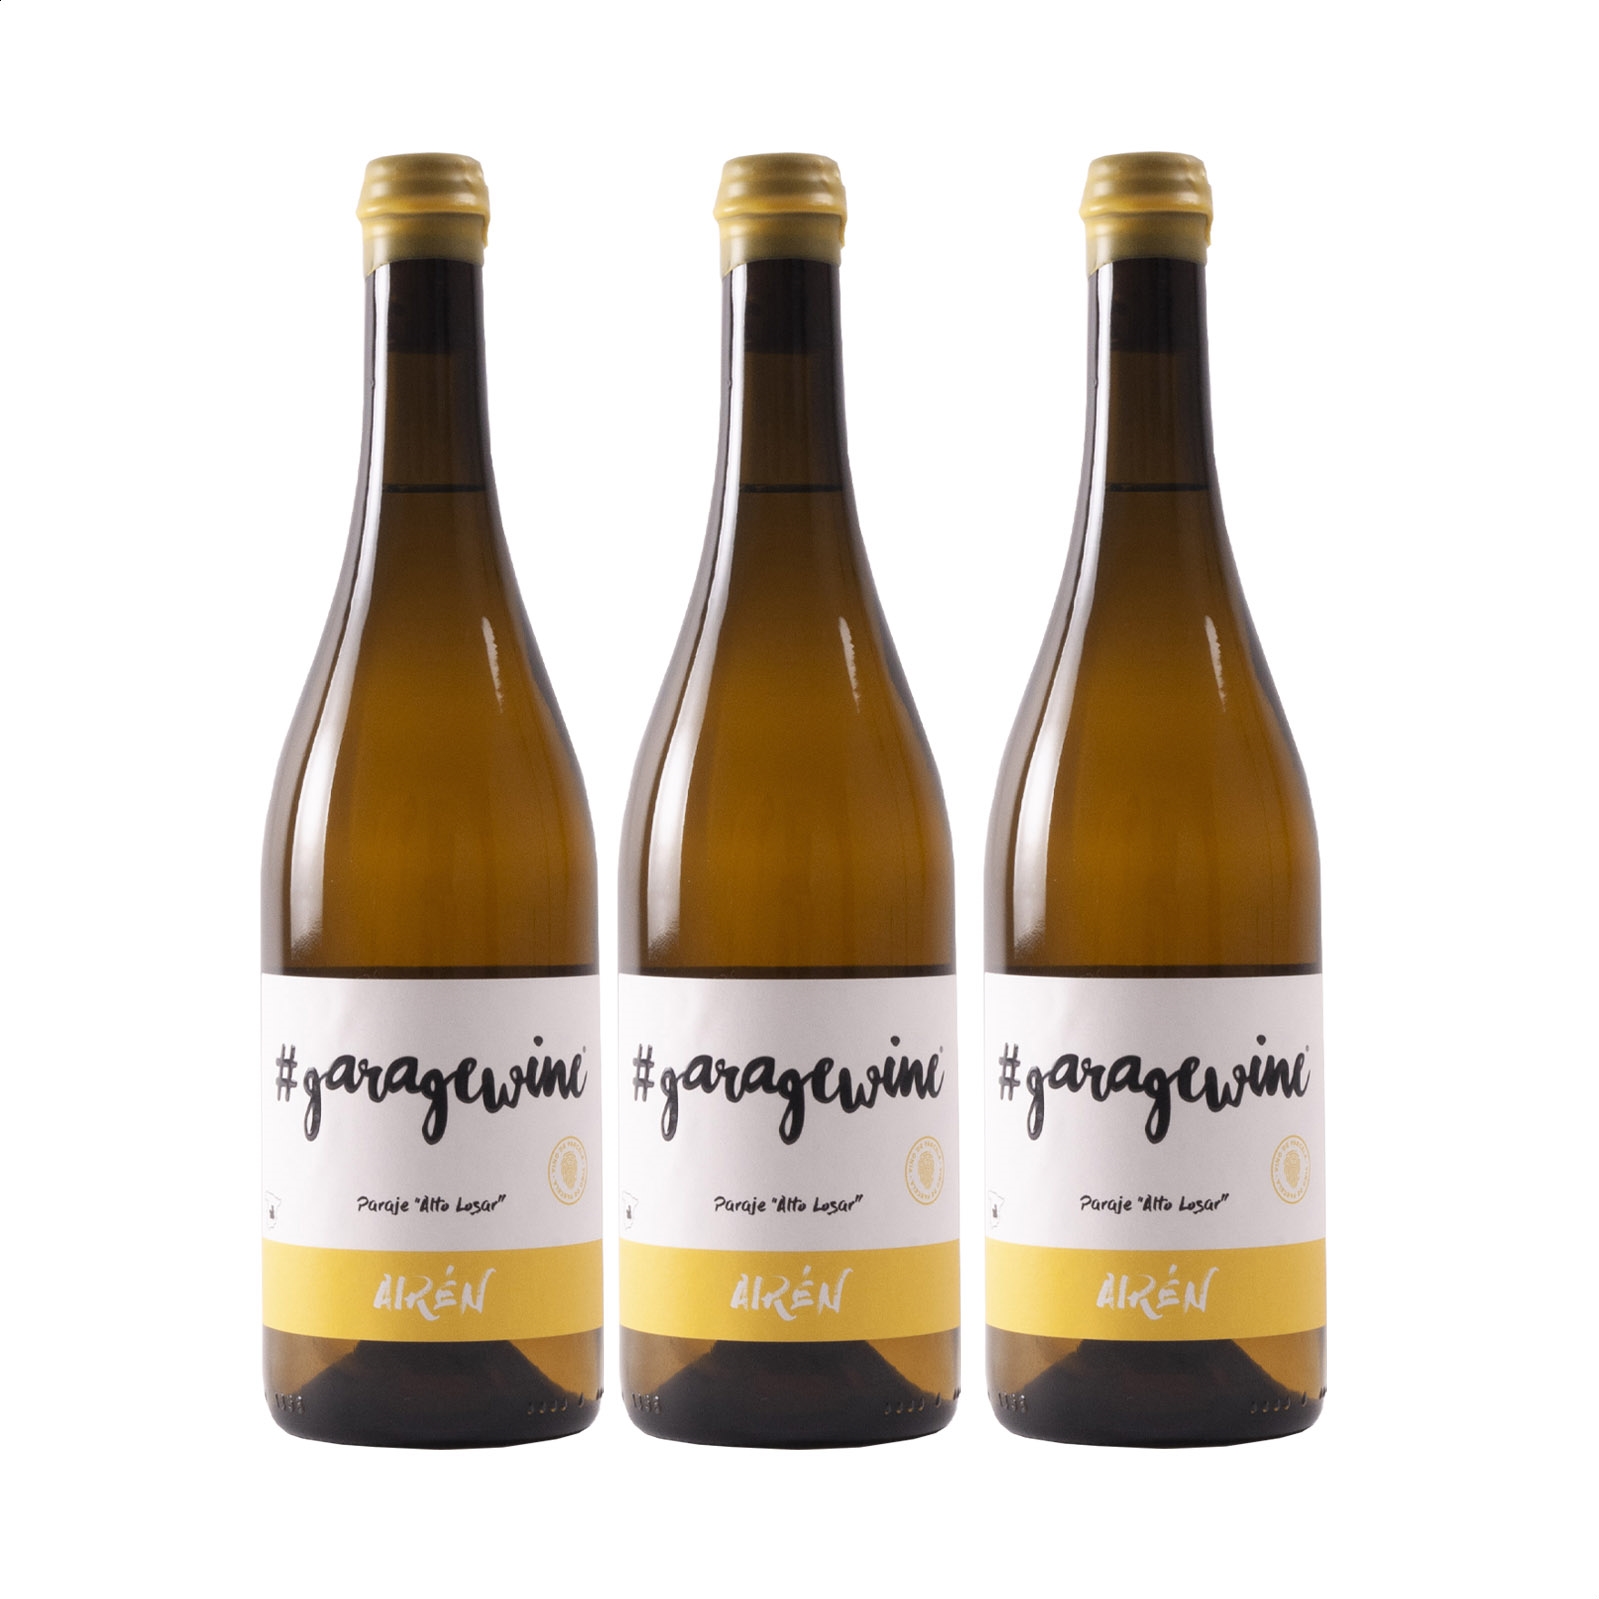 Garagewine - Airén vino blanco IGP Vino de la Tierra de Castilla 75cl, 3uds